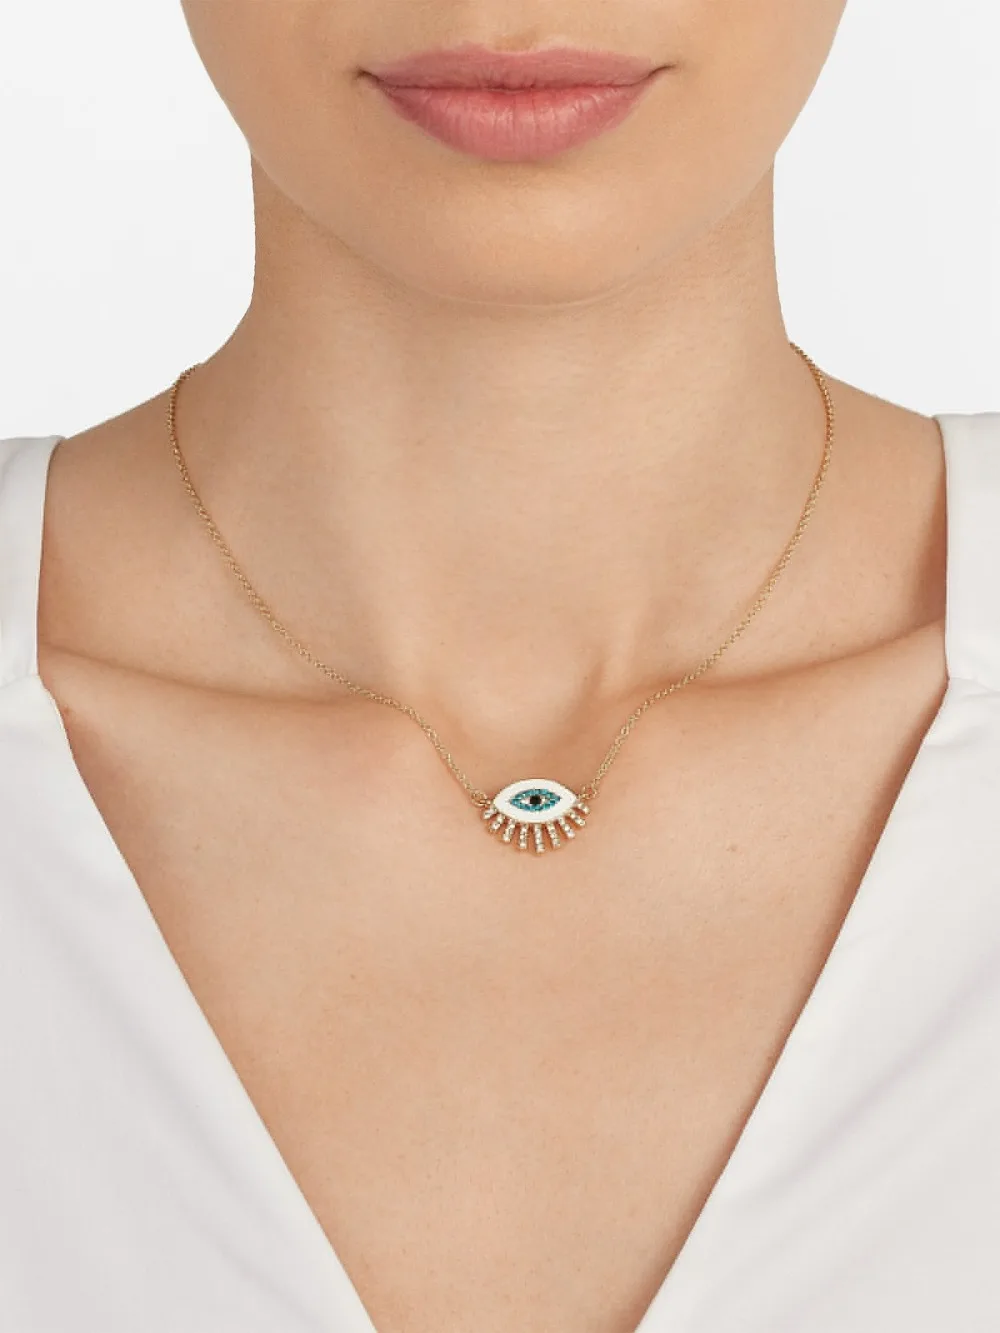 Dvacaman богемное жемчужное ожерелье для женщин Свадебное Сердце глаз украшение для чокера воротник милое представительное ожерелье, ювелирные изделия подарок